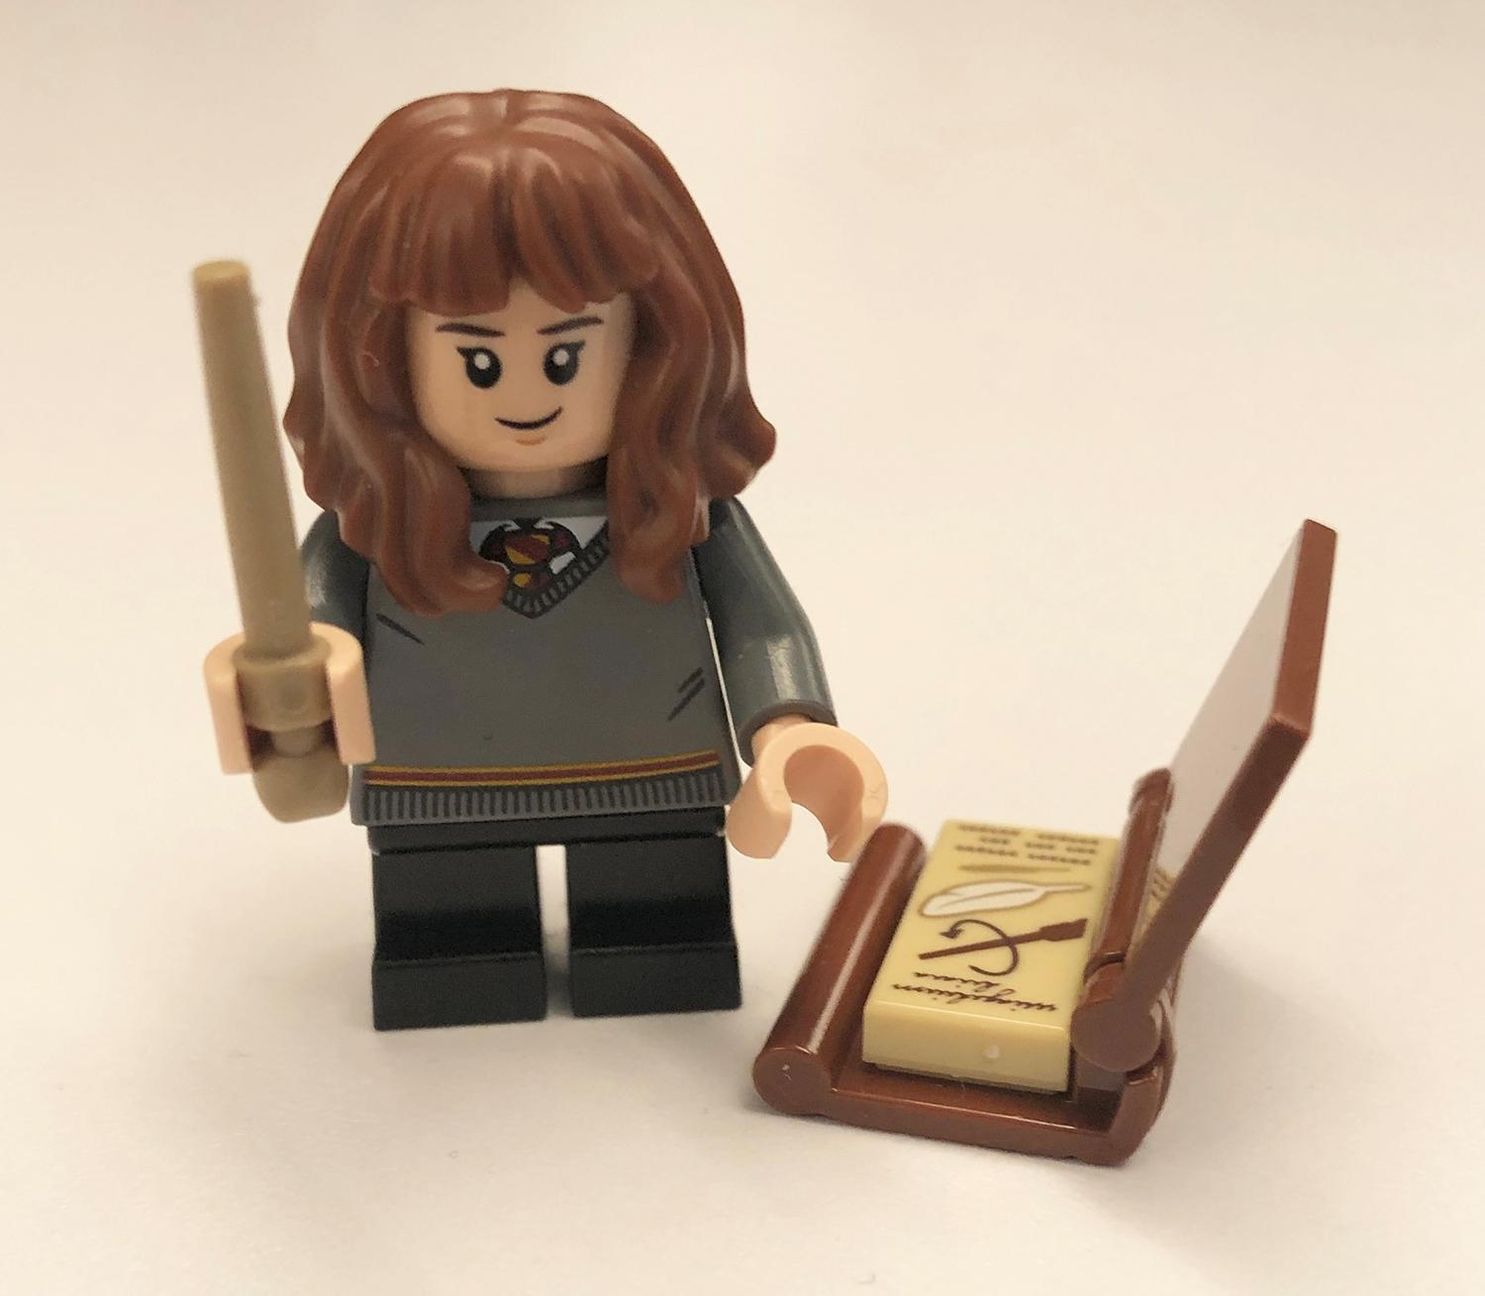 LEGO® Harry Potter: Alles über Hogwarts: Schulfächer, Zaubersprüche,  Quidditch und mehr! Buch versandkostenfrei bei Weltbild.de bestellen